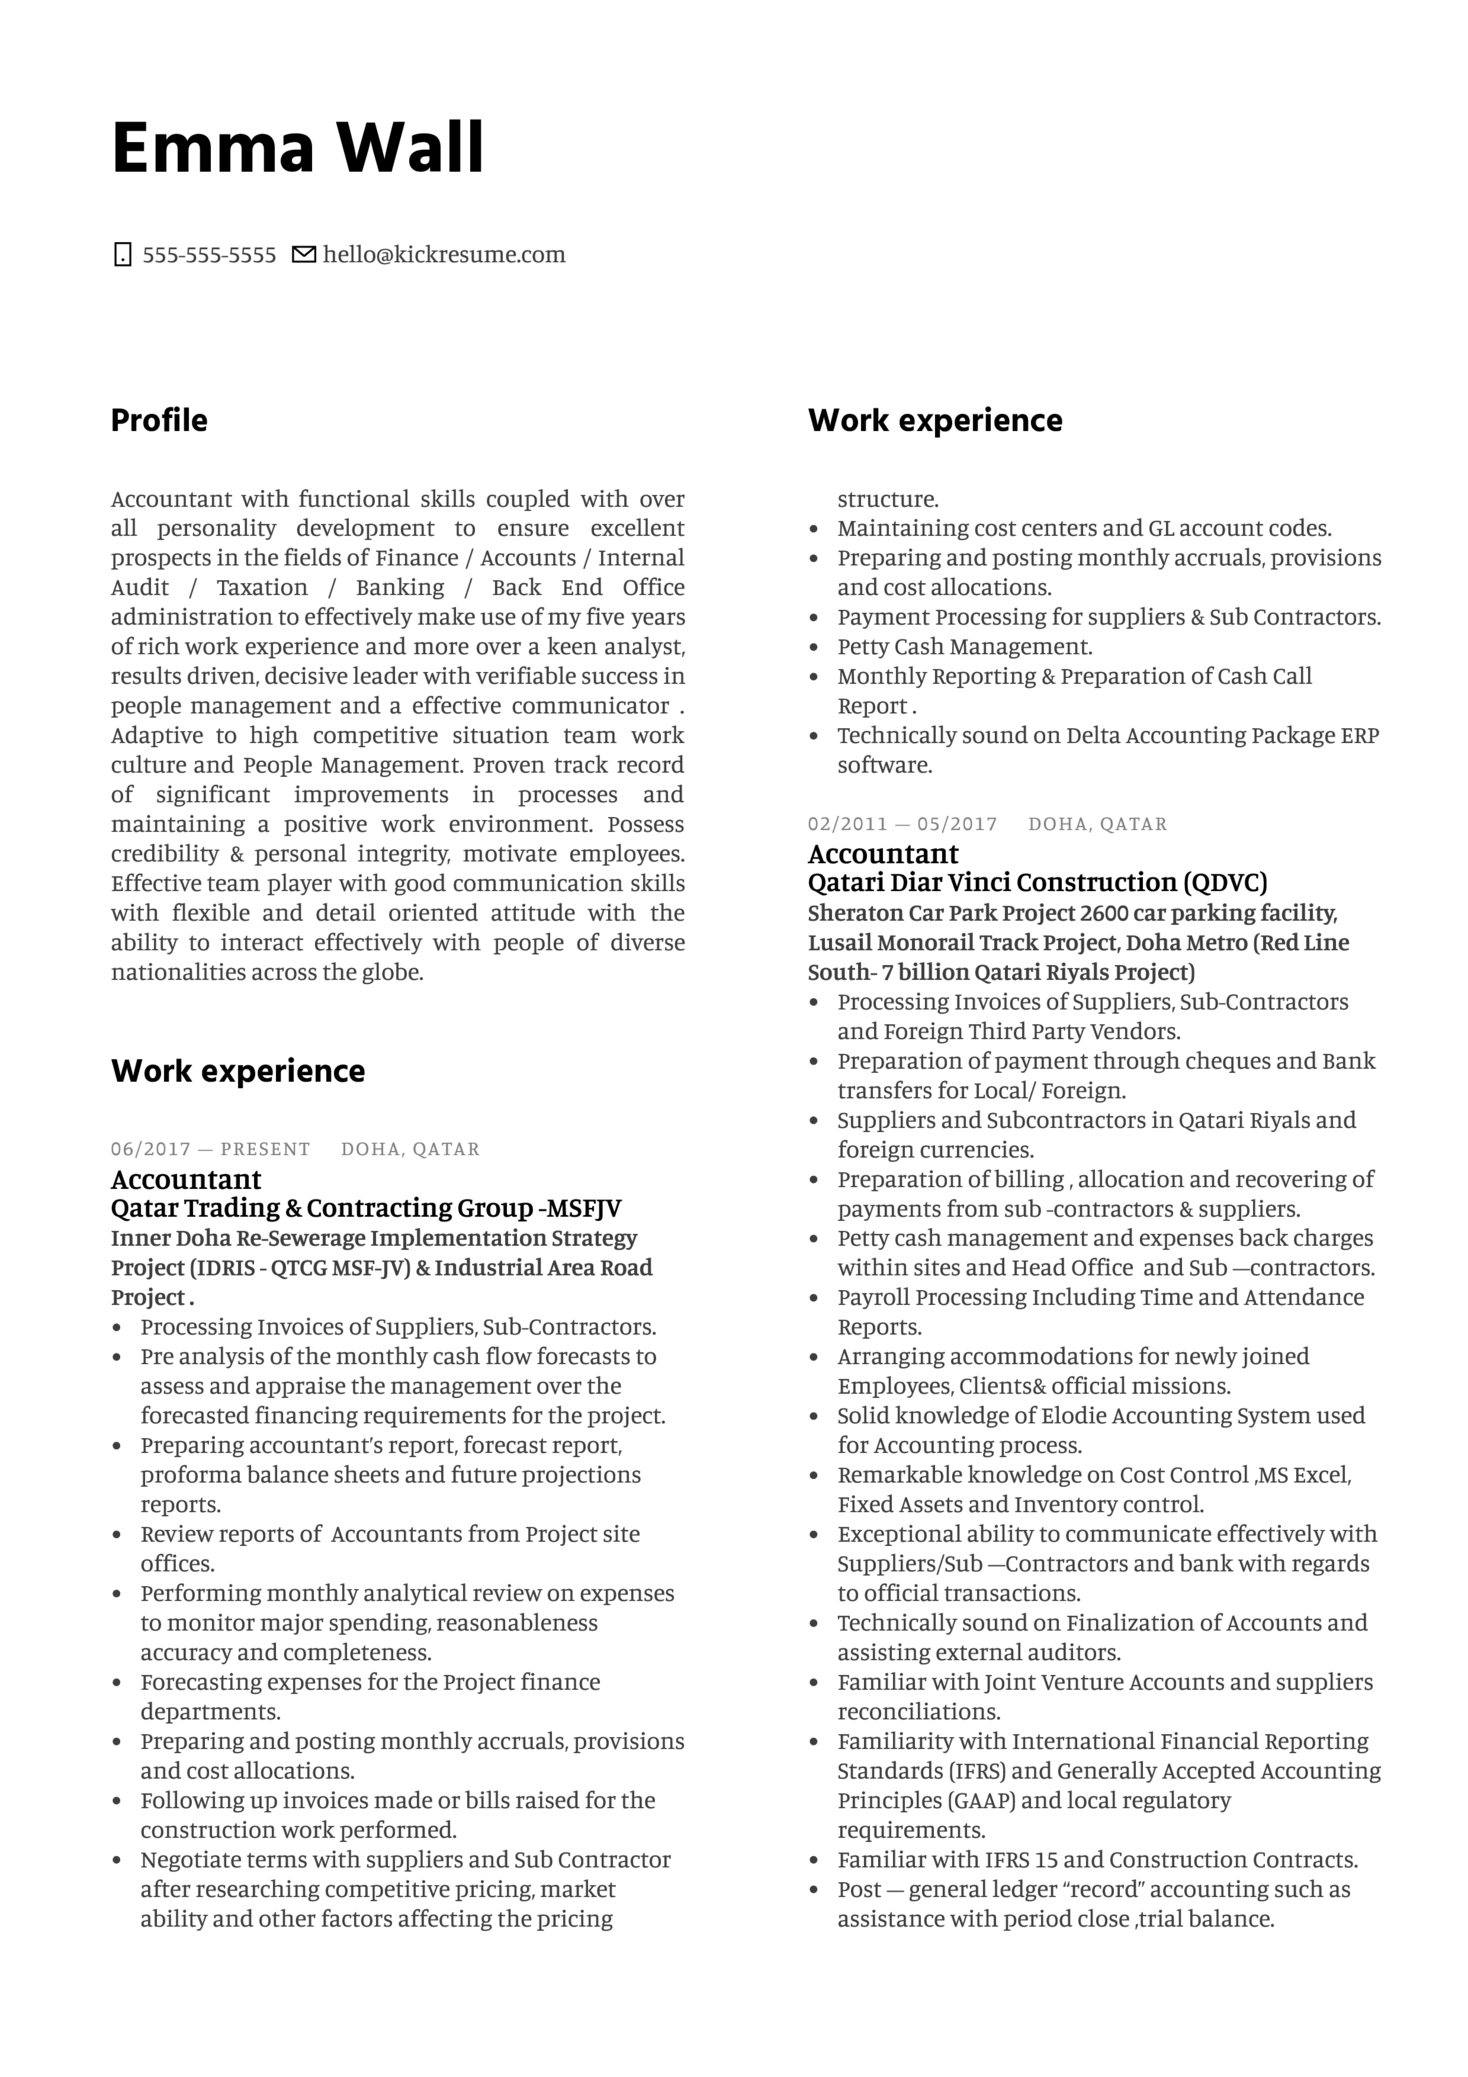 Contoh CV dari Schenker